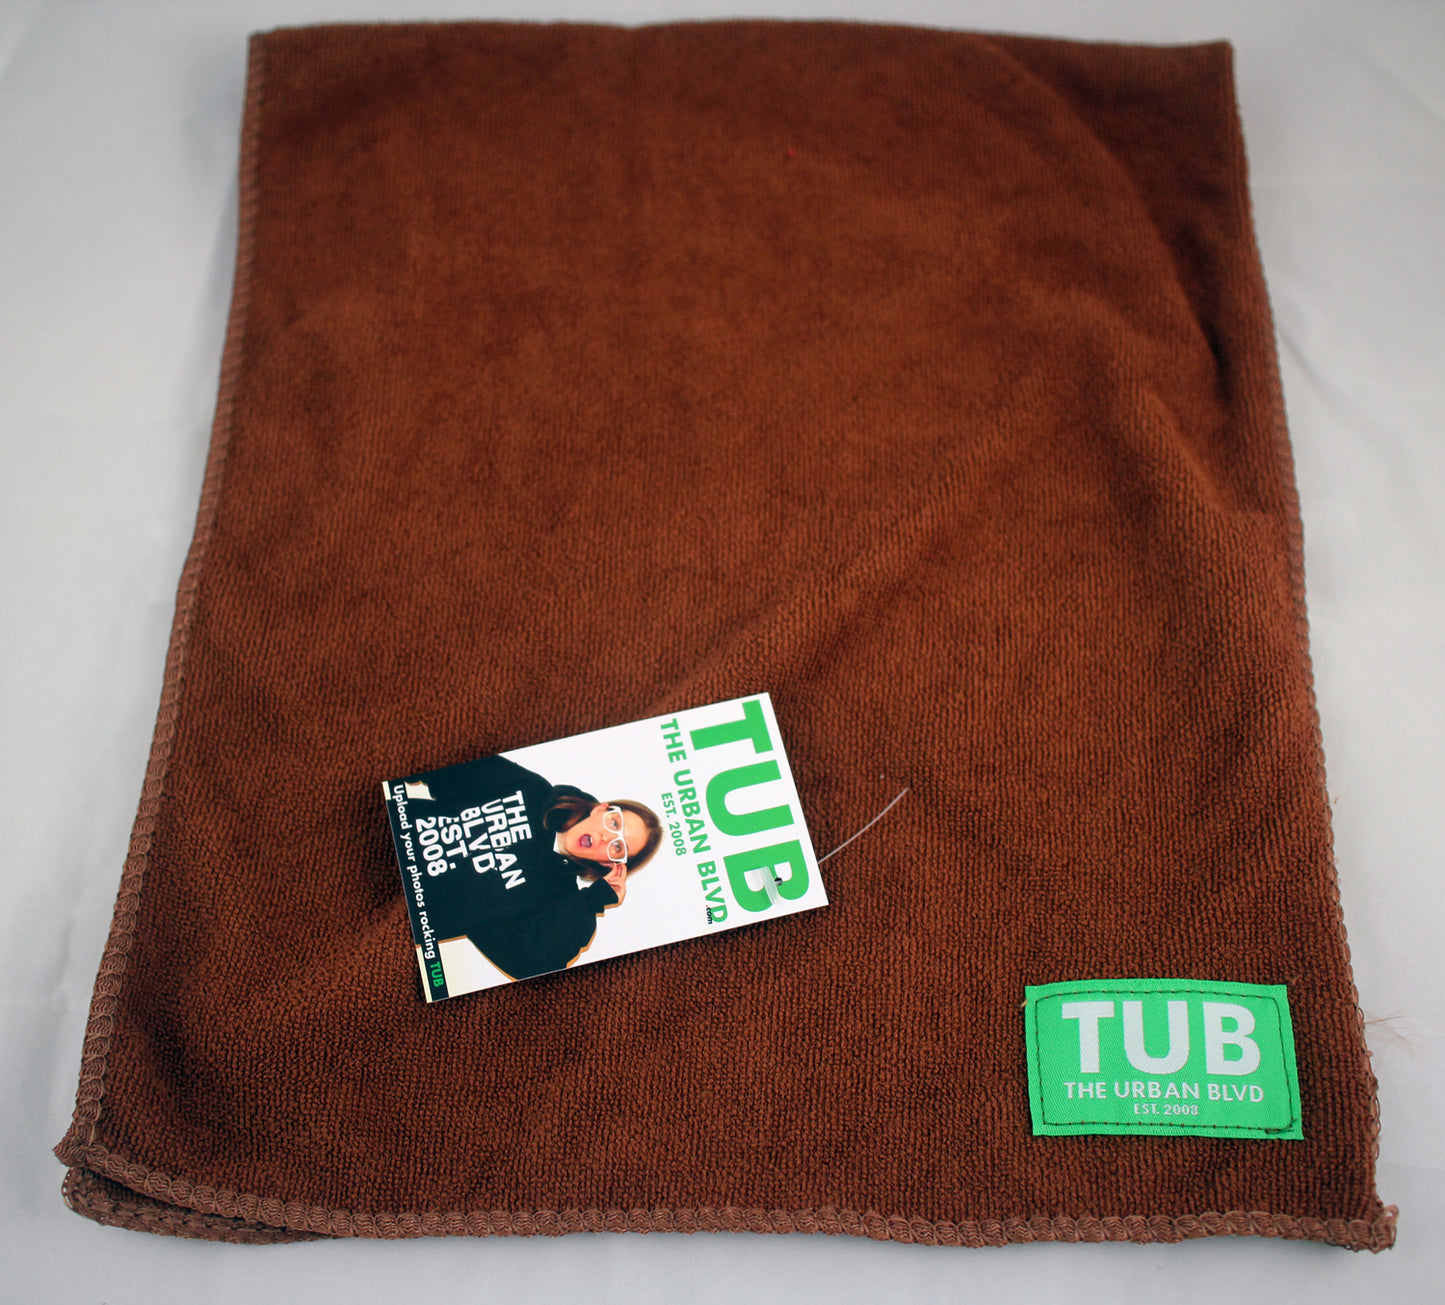 TUB Microfiber Cleaning Towel (brown)